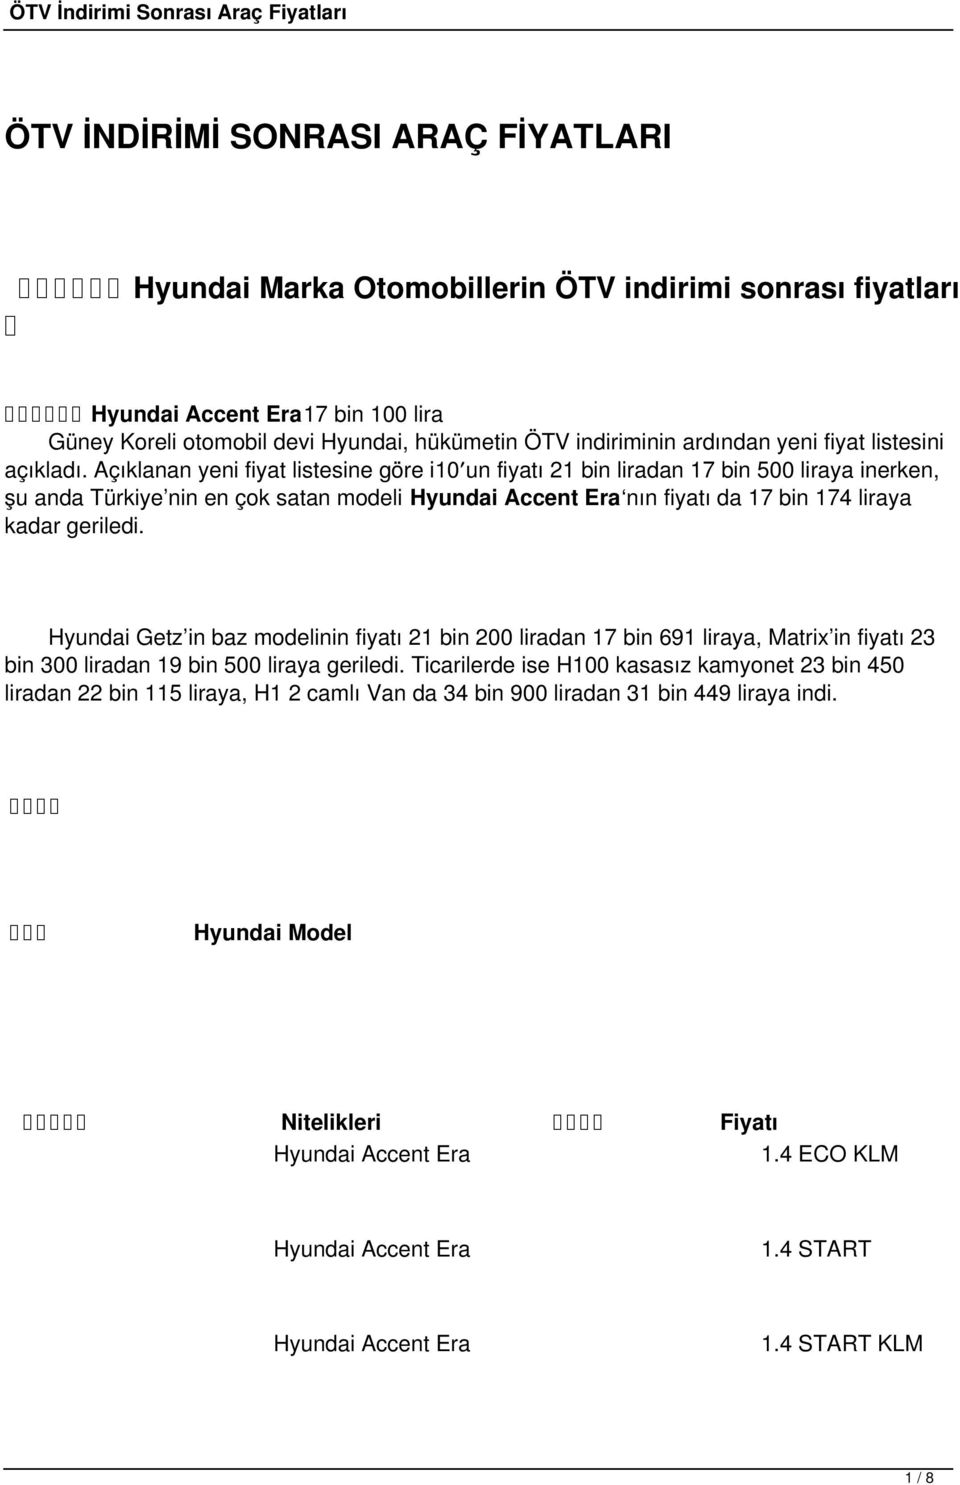 Açıklanan yeni fiyat listesine göre i0 un fiyatı bin liradan 7 bin 500 liraya inerken, şu anda Türkiye nin en çok satan modeli Hyundai Accent Era nın fiyatı da 7 bin 74 liraya kadar geriledi.